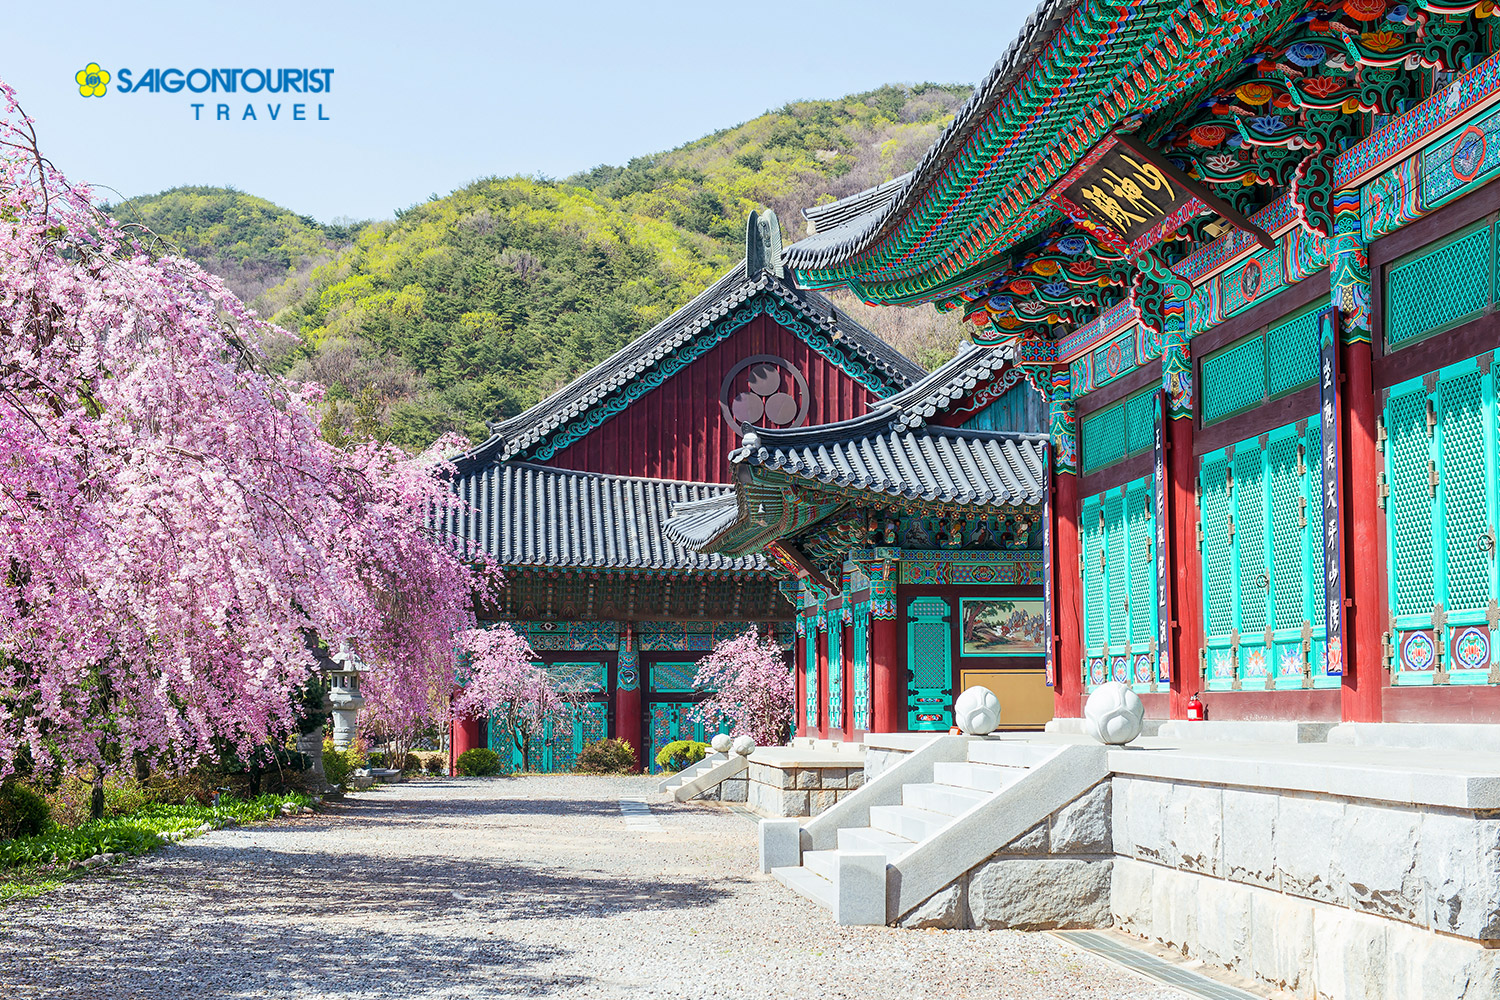 Du lịch Hàn Quốc Mùa Hoa anh đào 2023 [Seoul - Nami - Morning Calm - Công viên Yeouido - Lotte World]